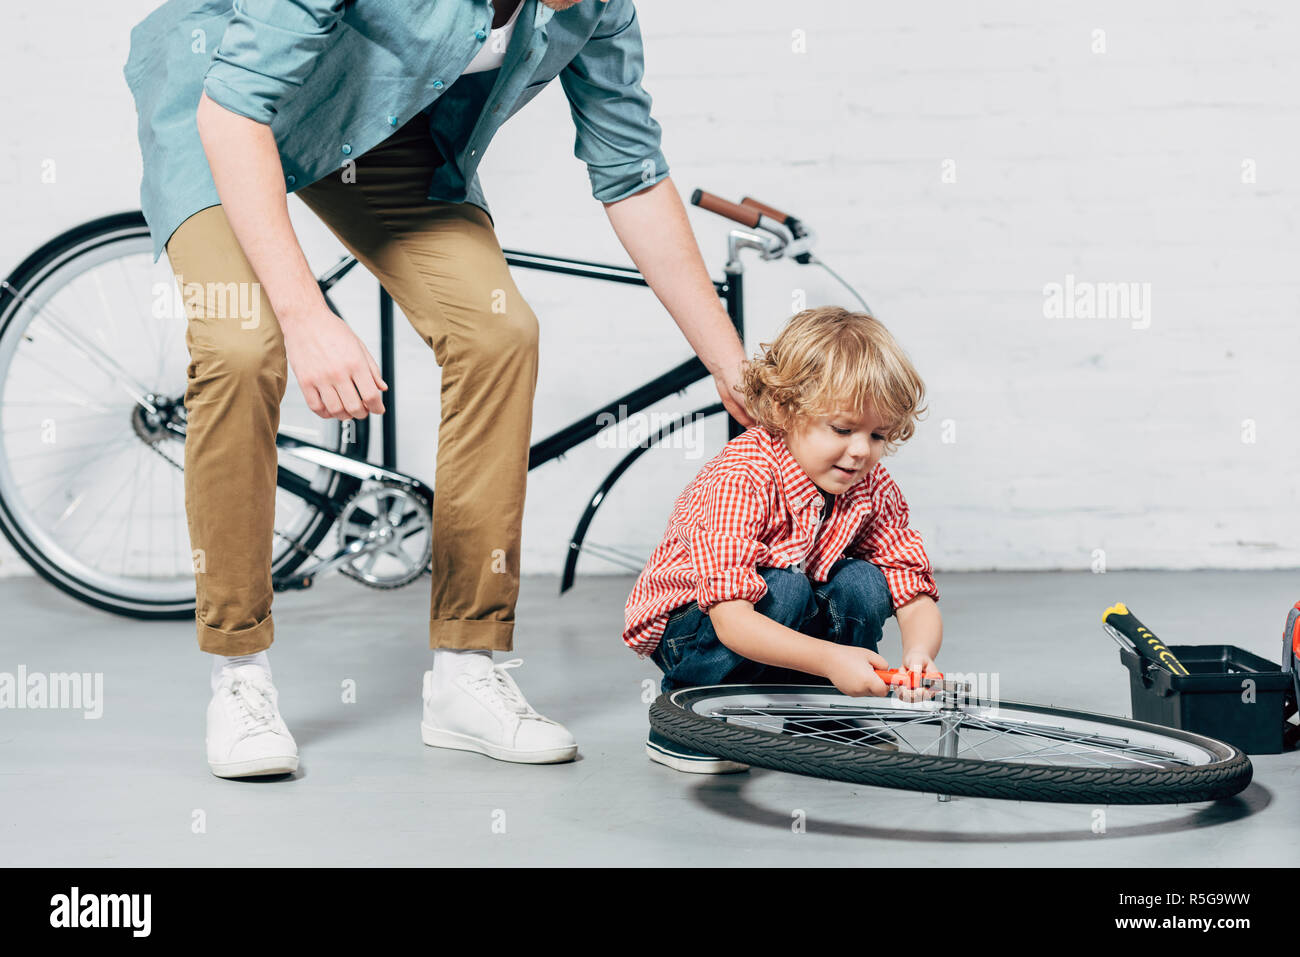 Fahrradwerkstatt Stockfotos und -bilder Kaufen - Alamy